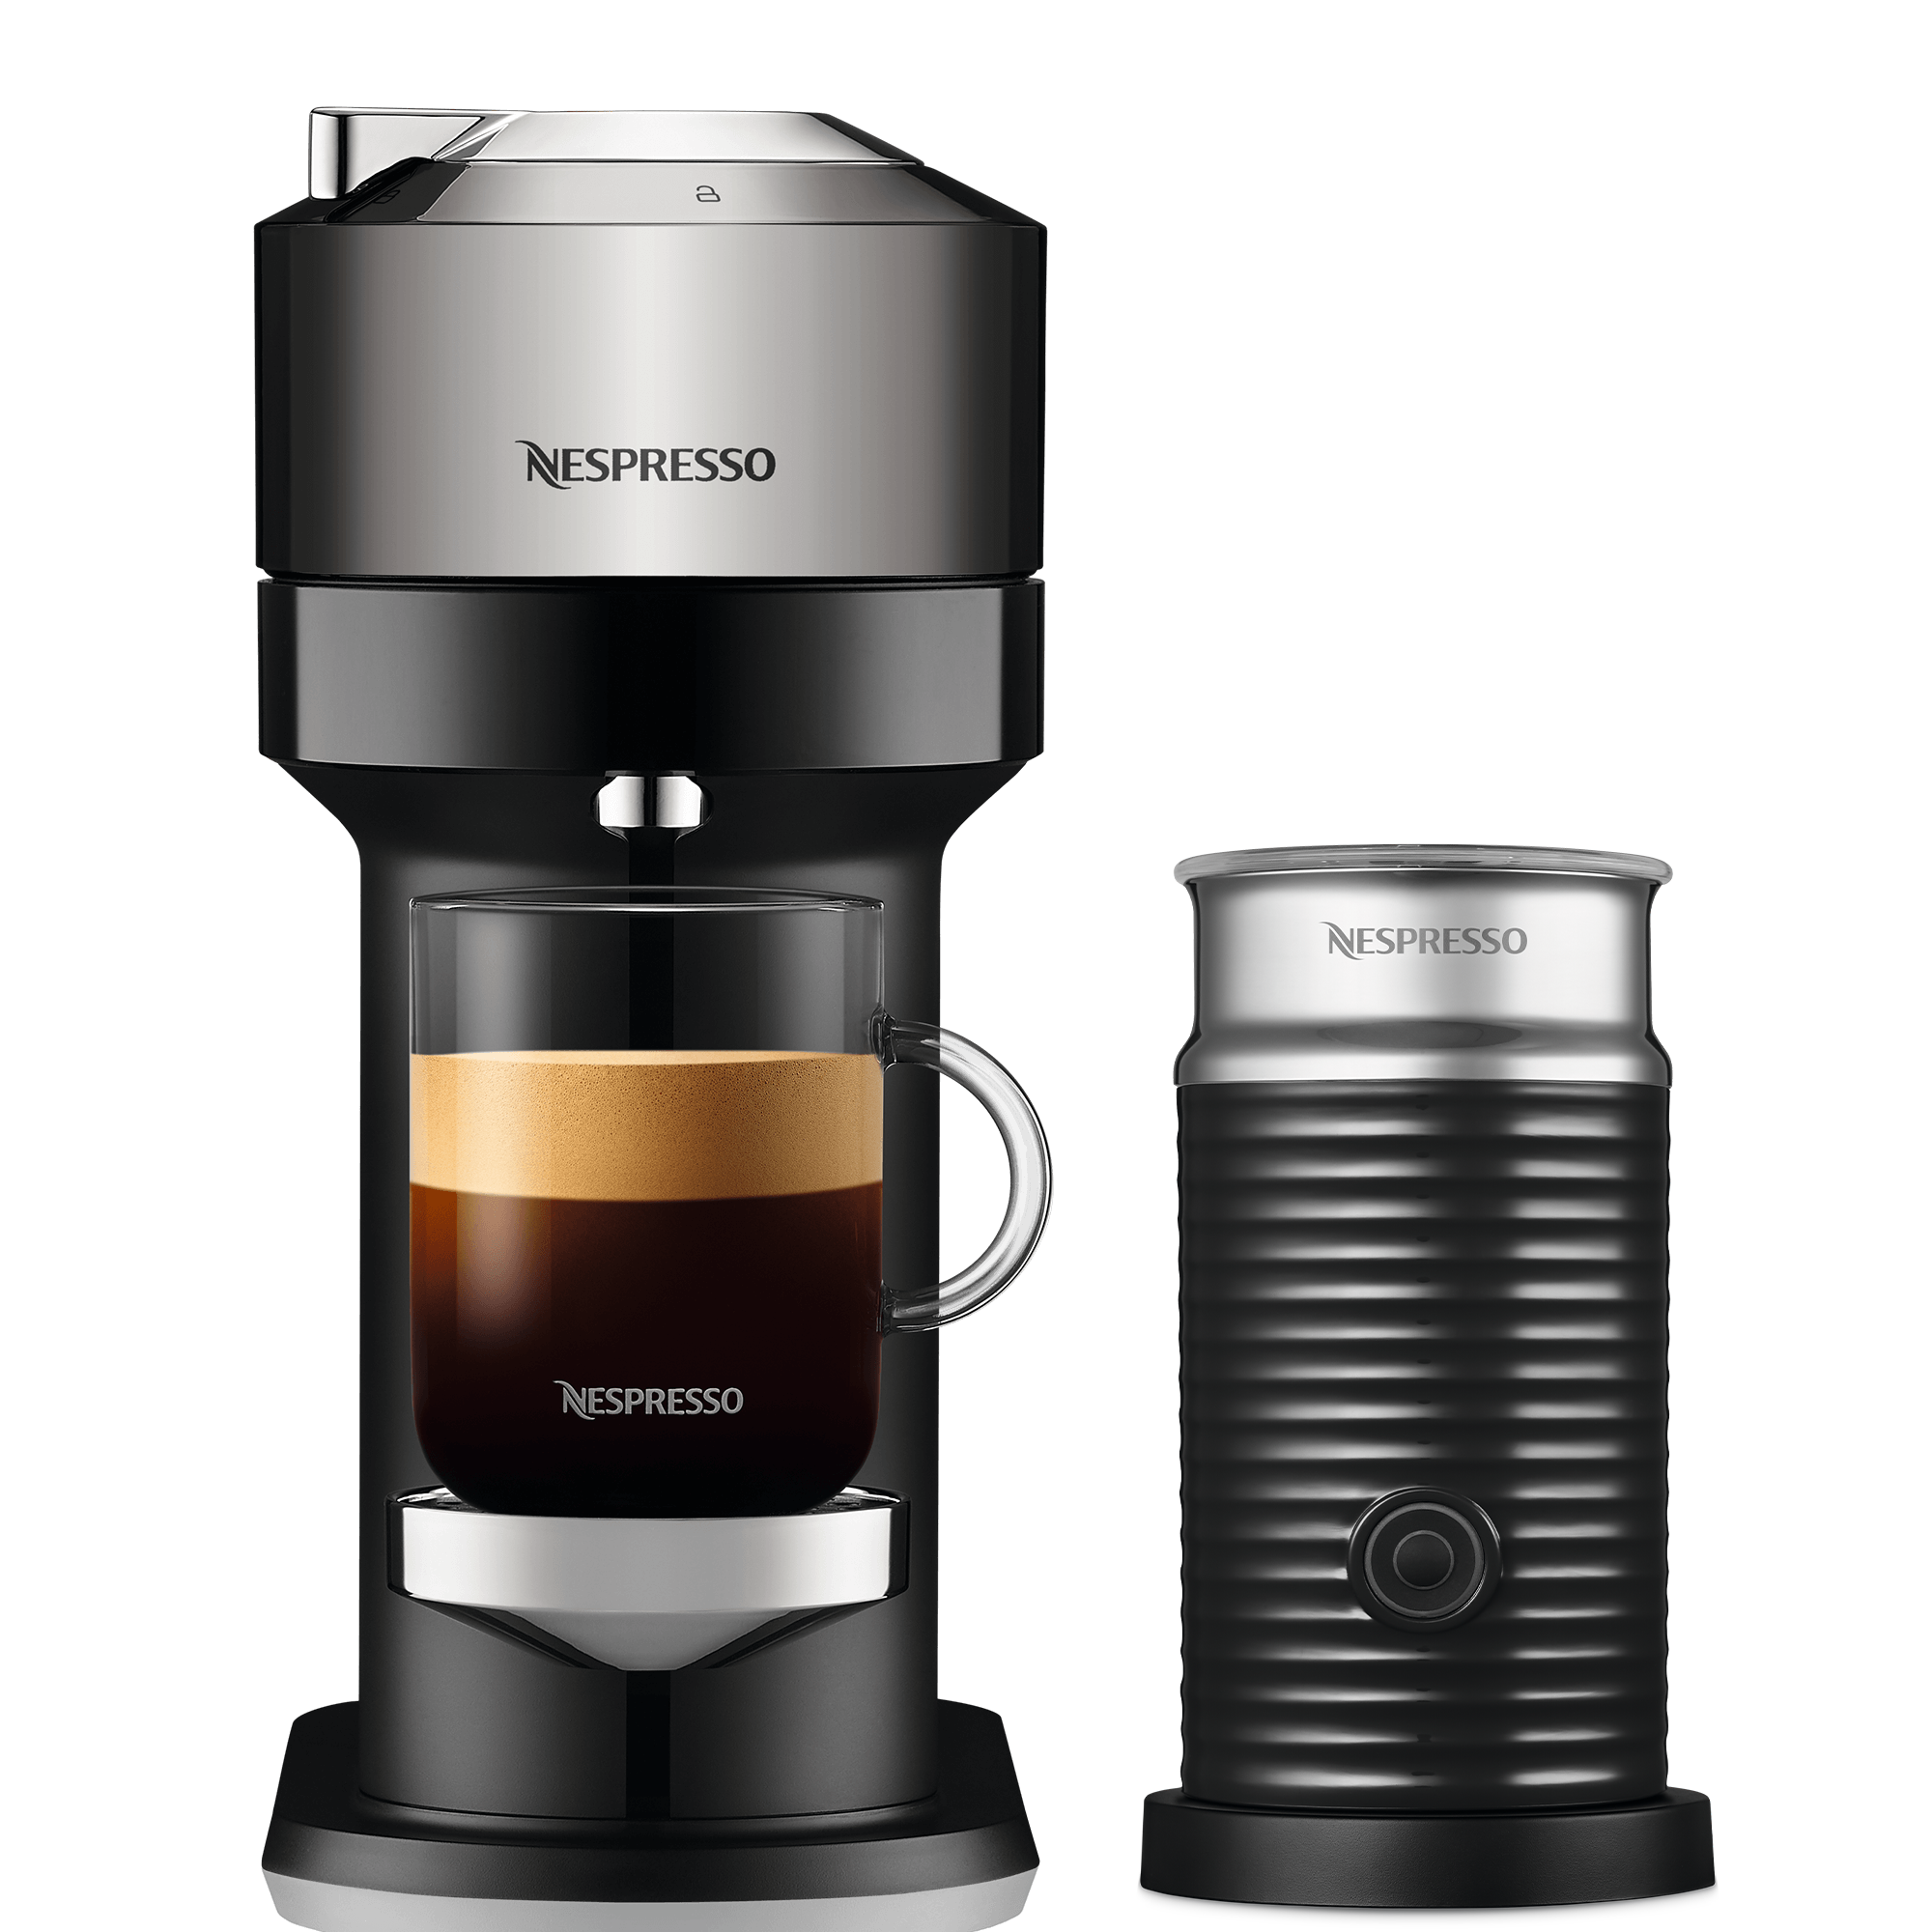 Venta de Cápsulas y Cafeteras Nespresso - Las cápsulas de Nespresso Vertuo  te ofrecen tazas de café pensadas para tomar largas, conservando todo el  aroma. Disfruta más que nunca el verdadero sabor